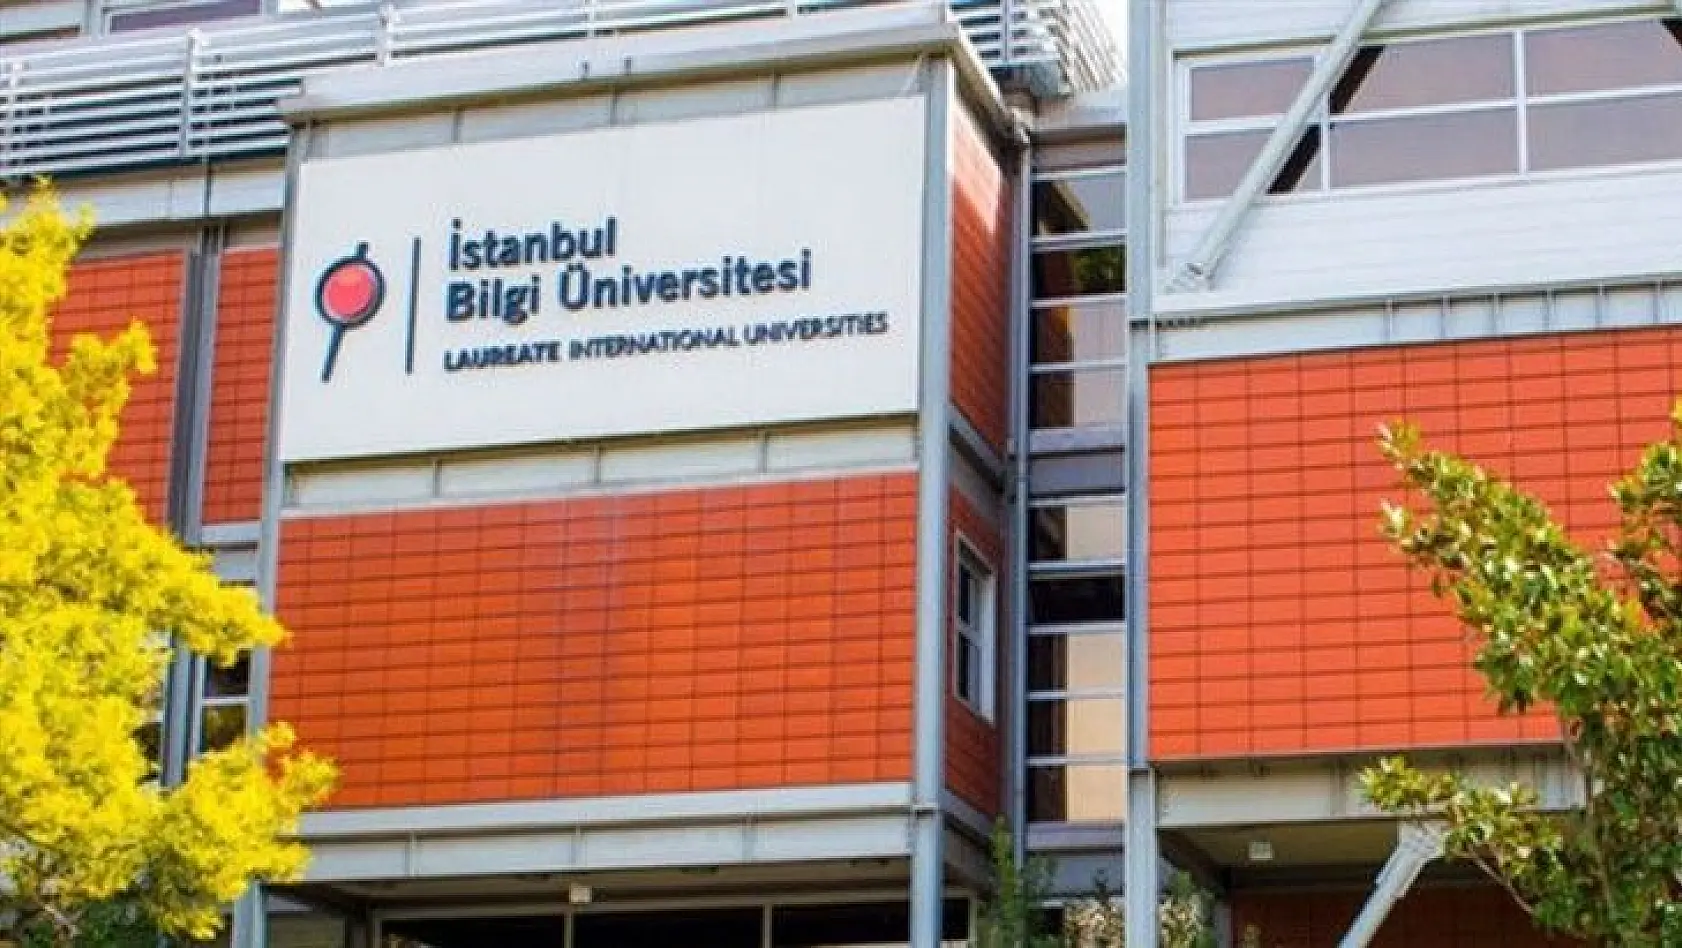 İstanbul Bilgi Üniversitesi Öğretim Üyesi alacak